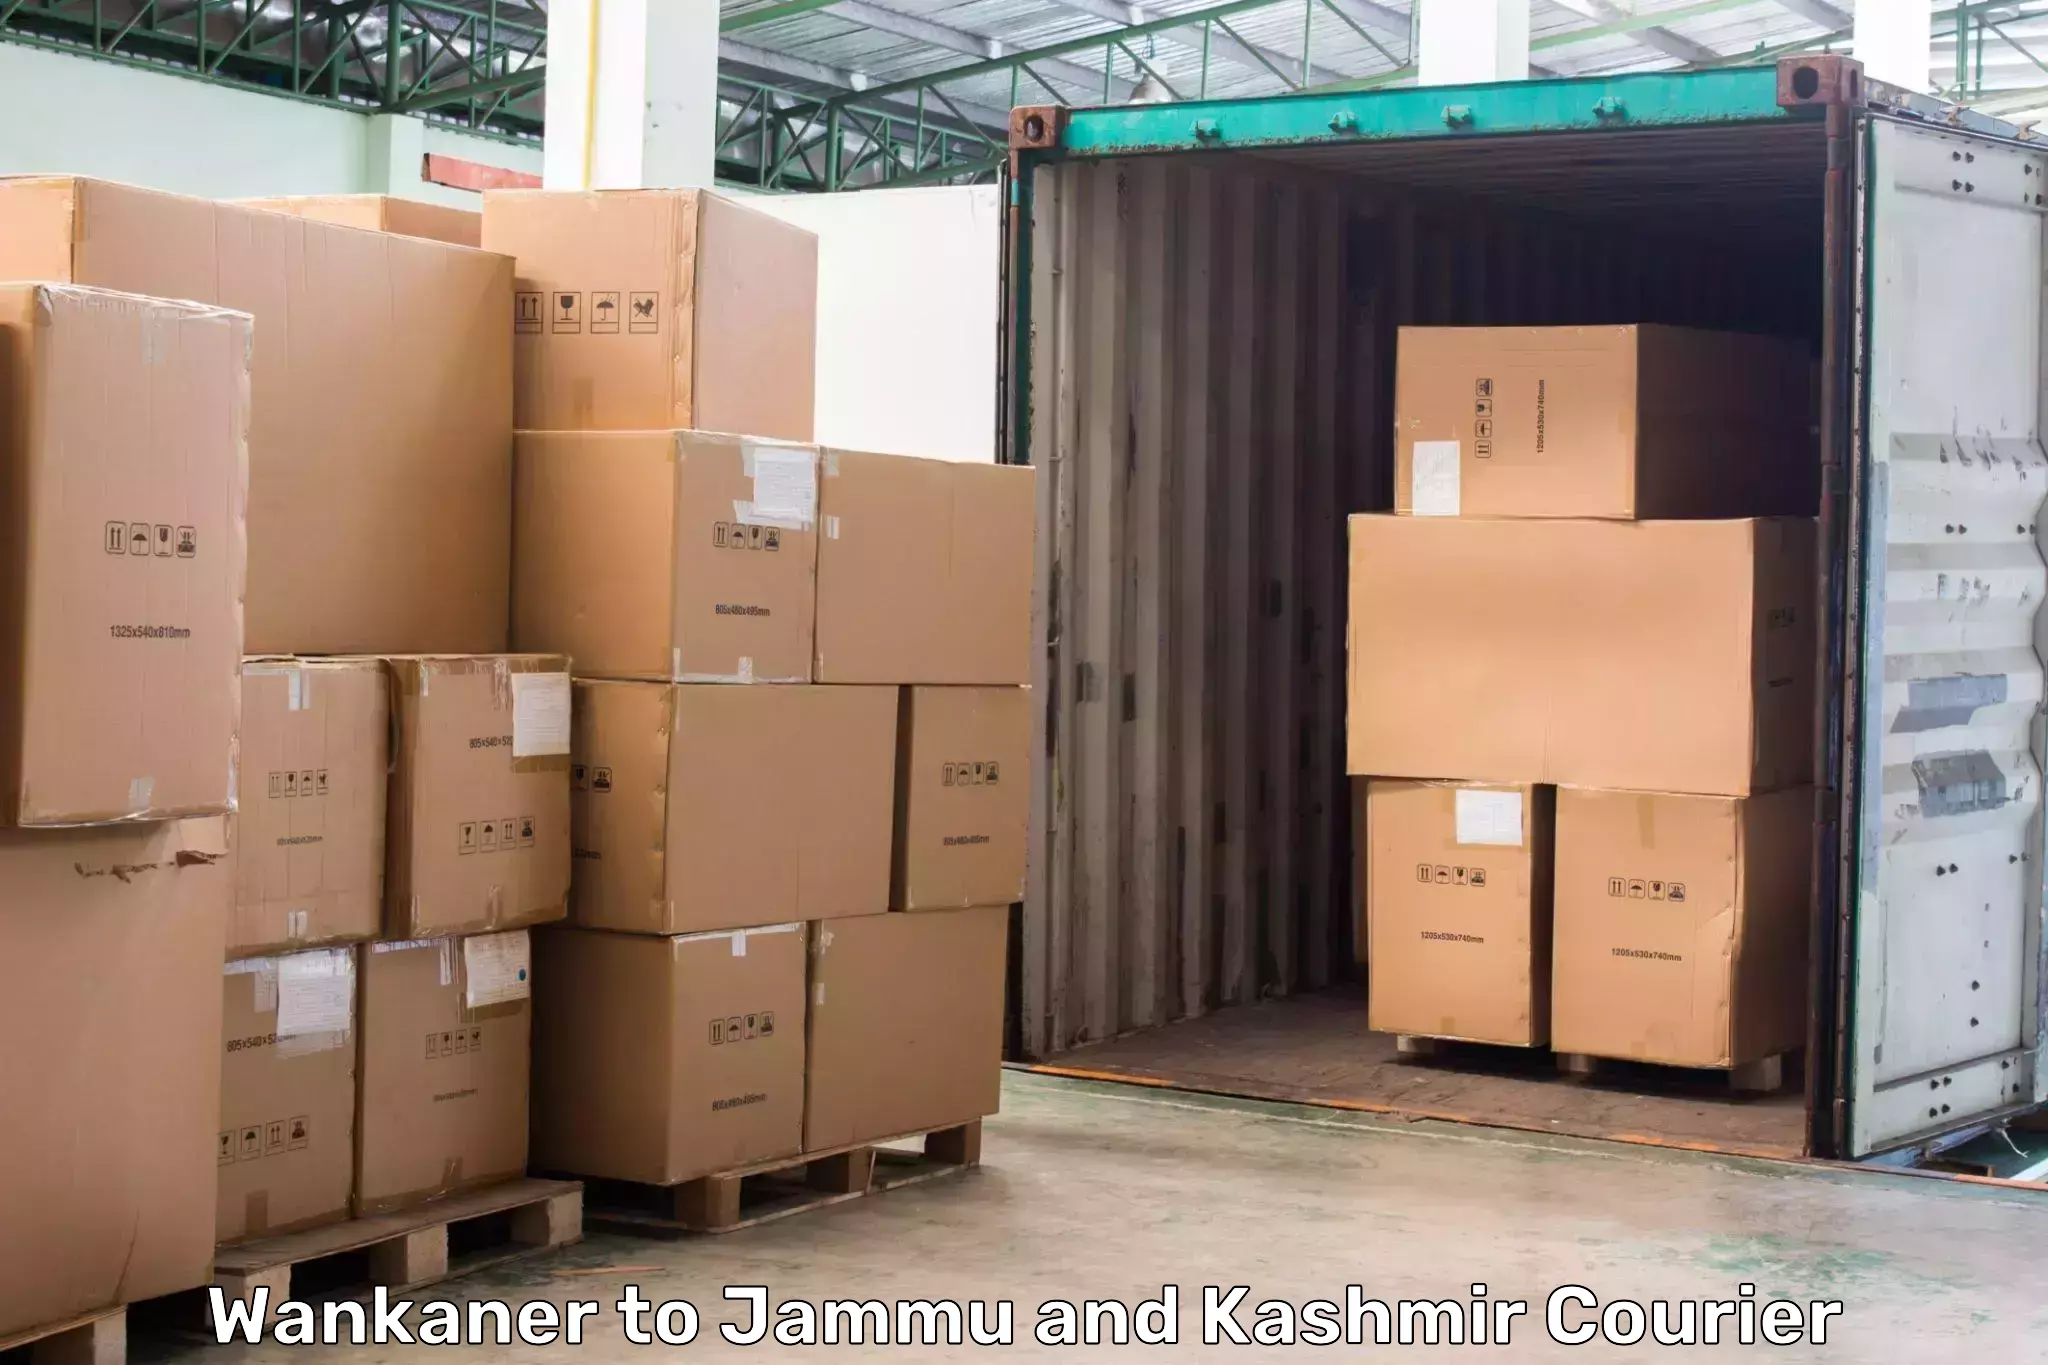 Speedy delivery service Wankaner to Samba